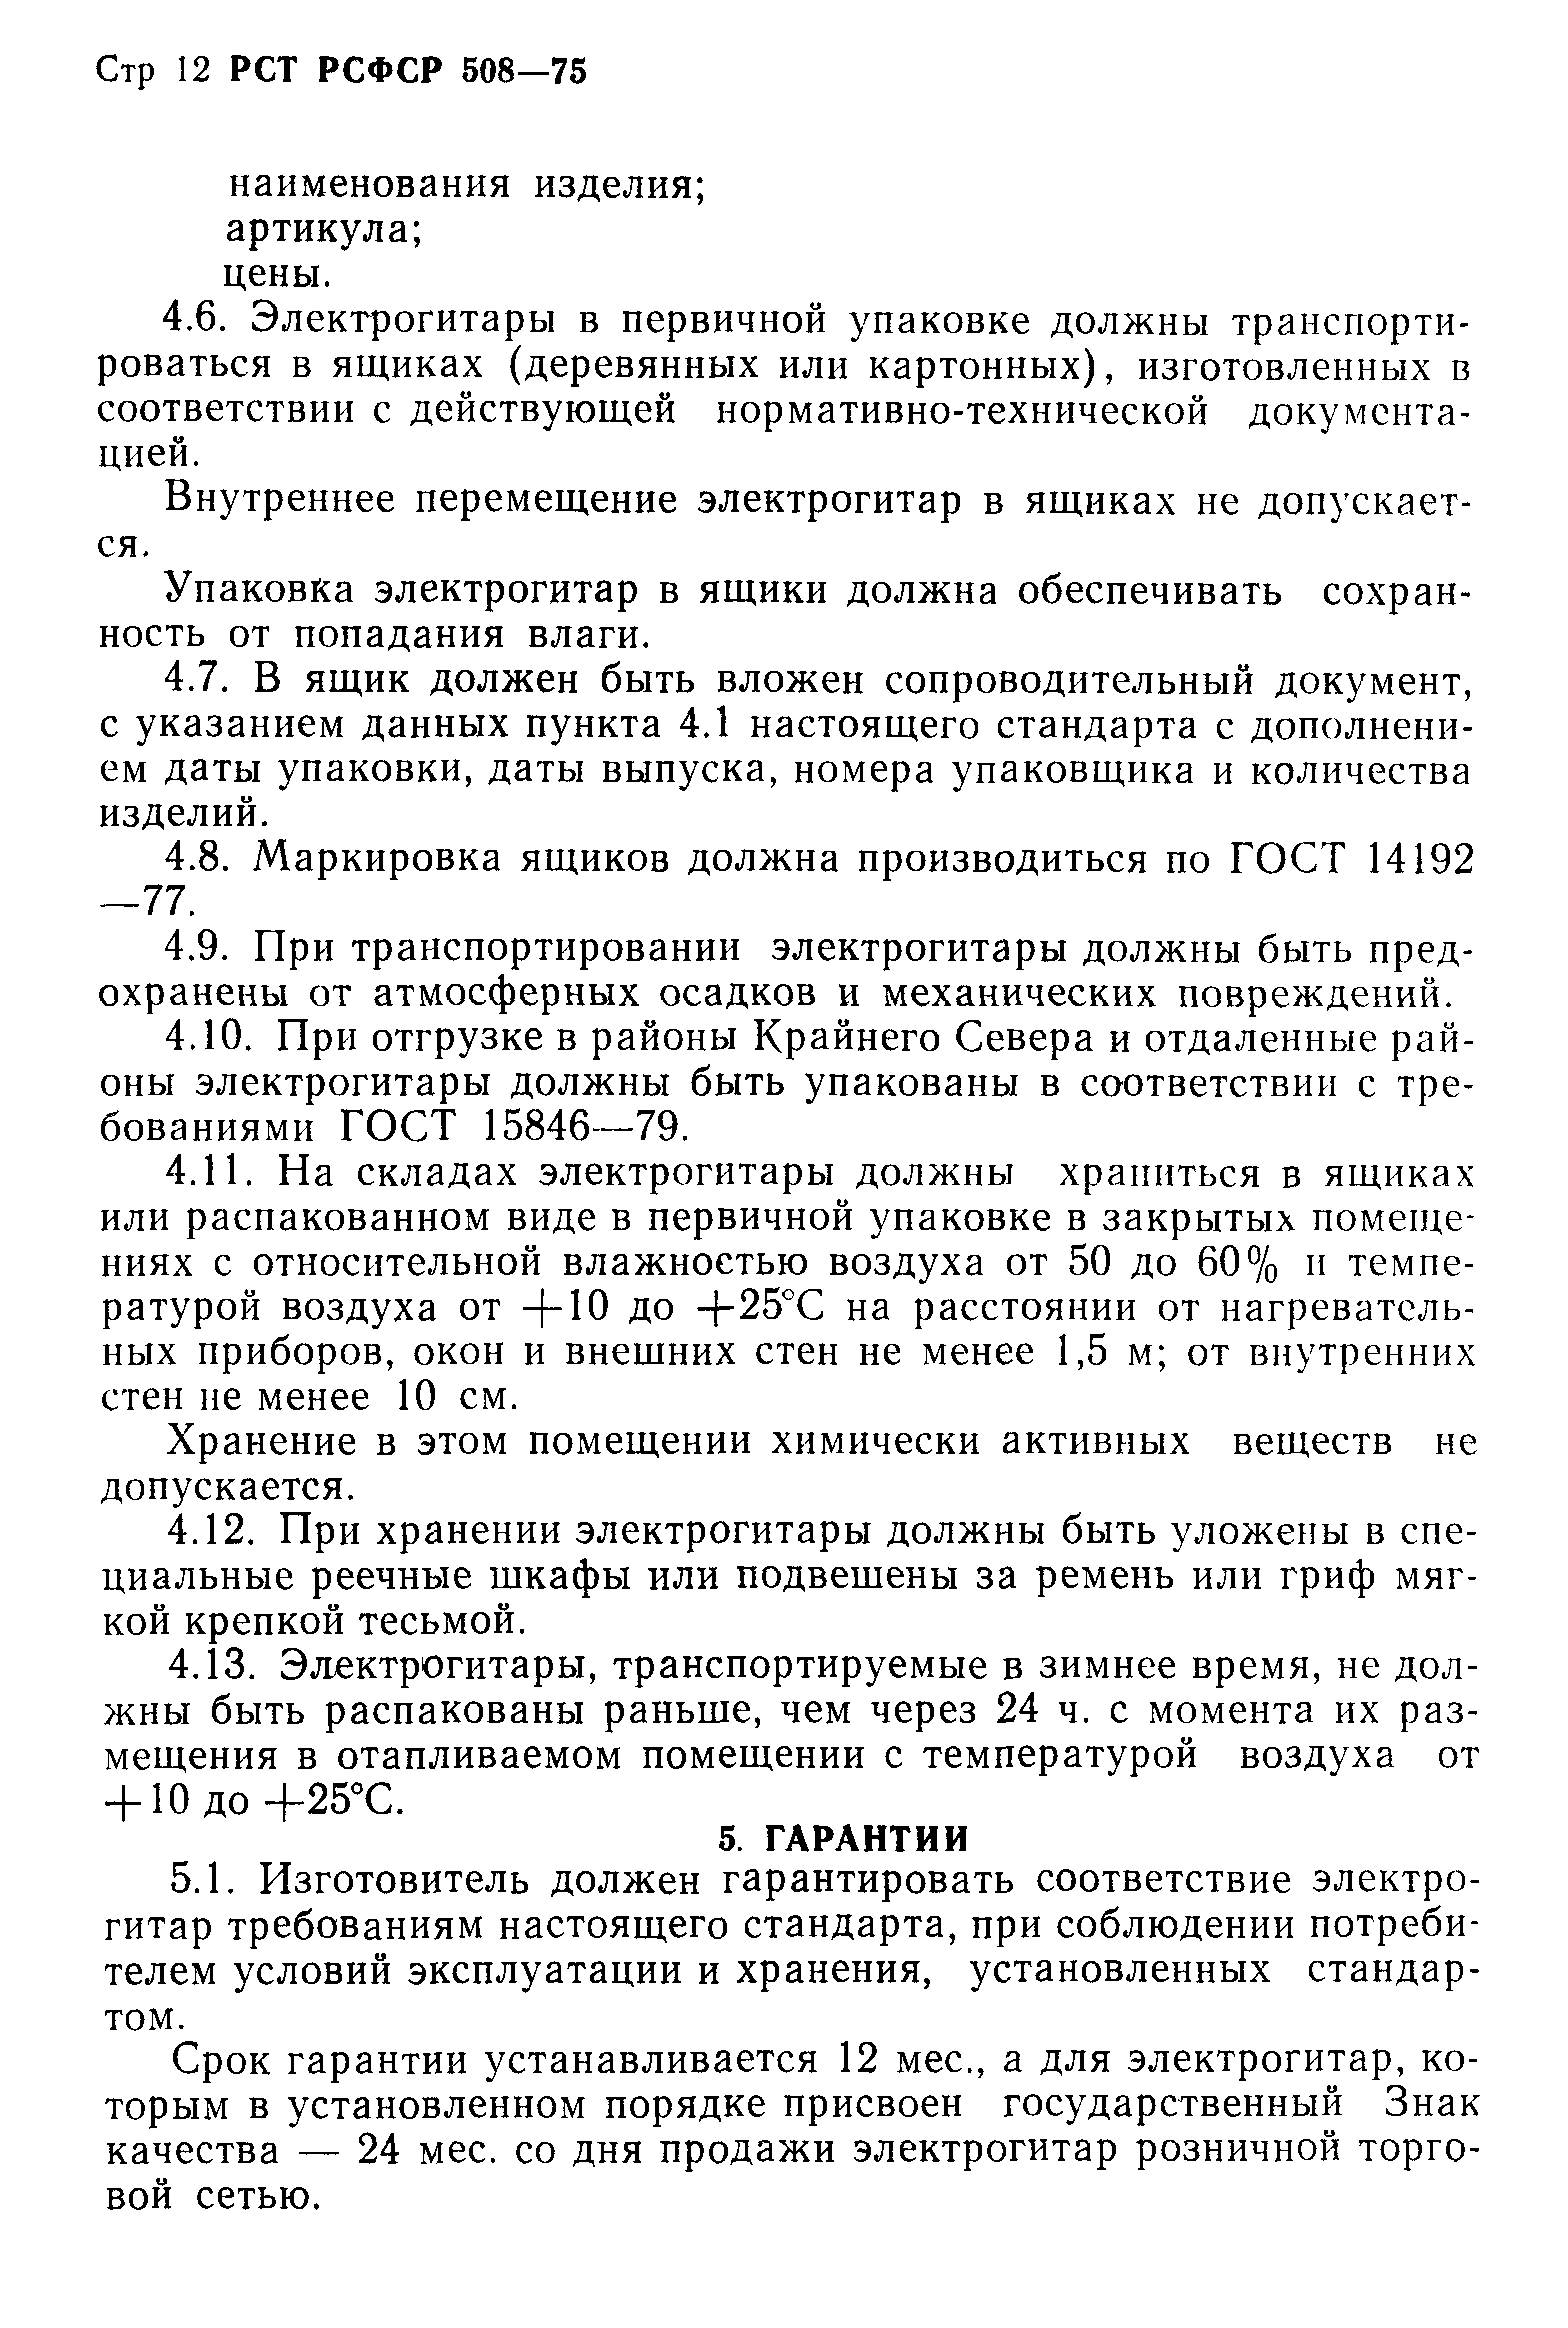 РСТ РСФСР 508-75